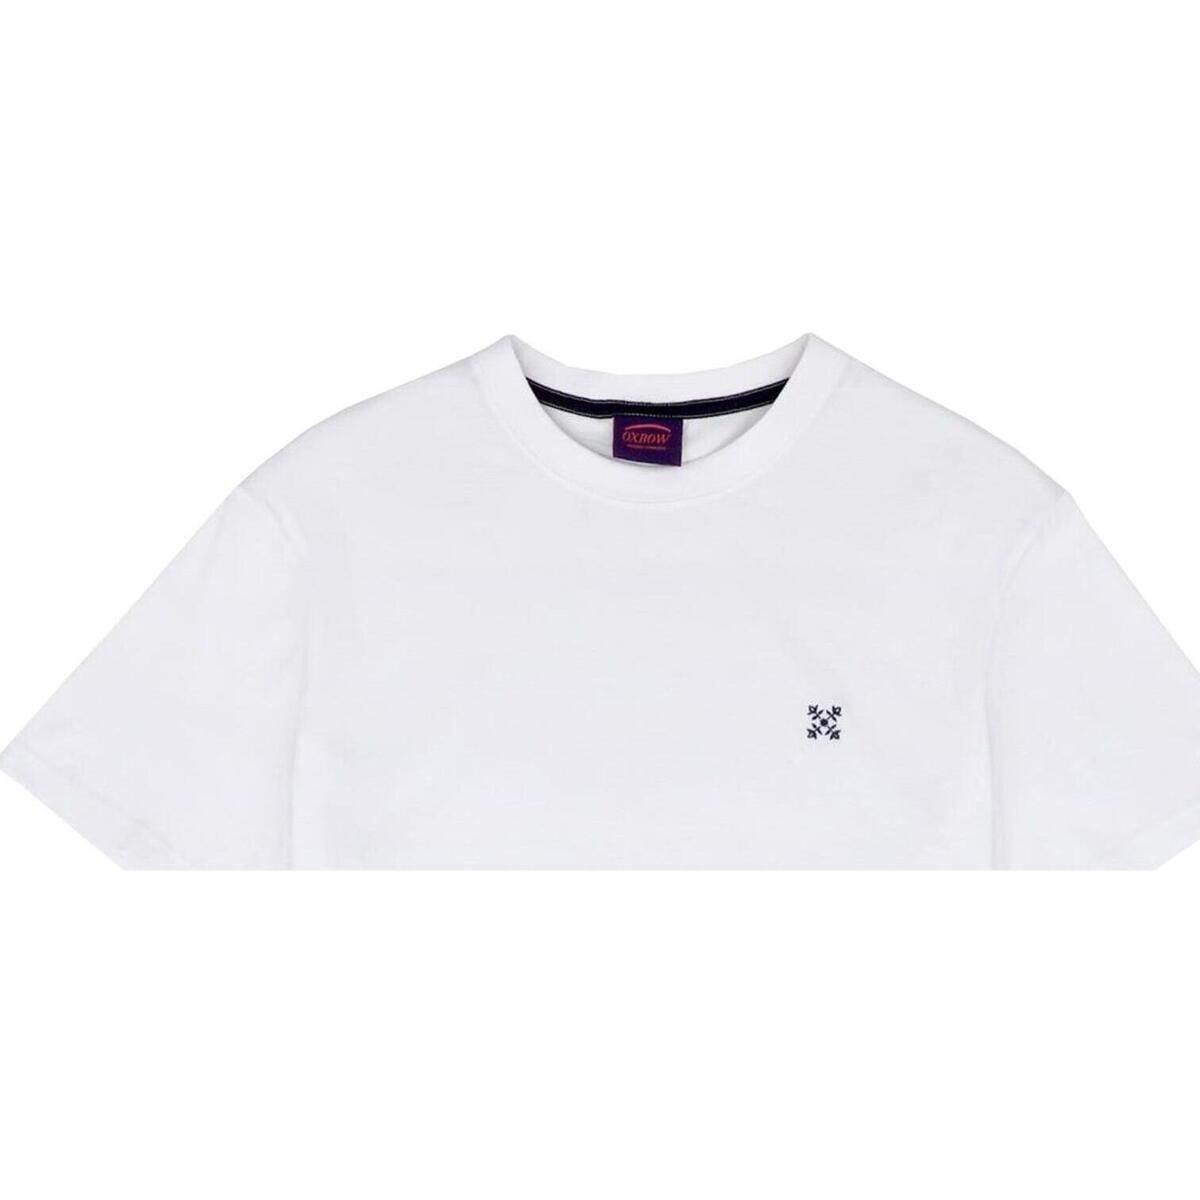 Oxbow Blanc Tee shirt manches courtes uni sn95RyPt